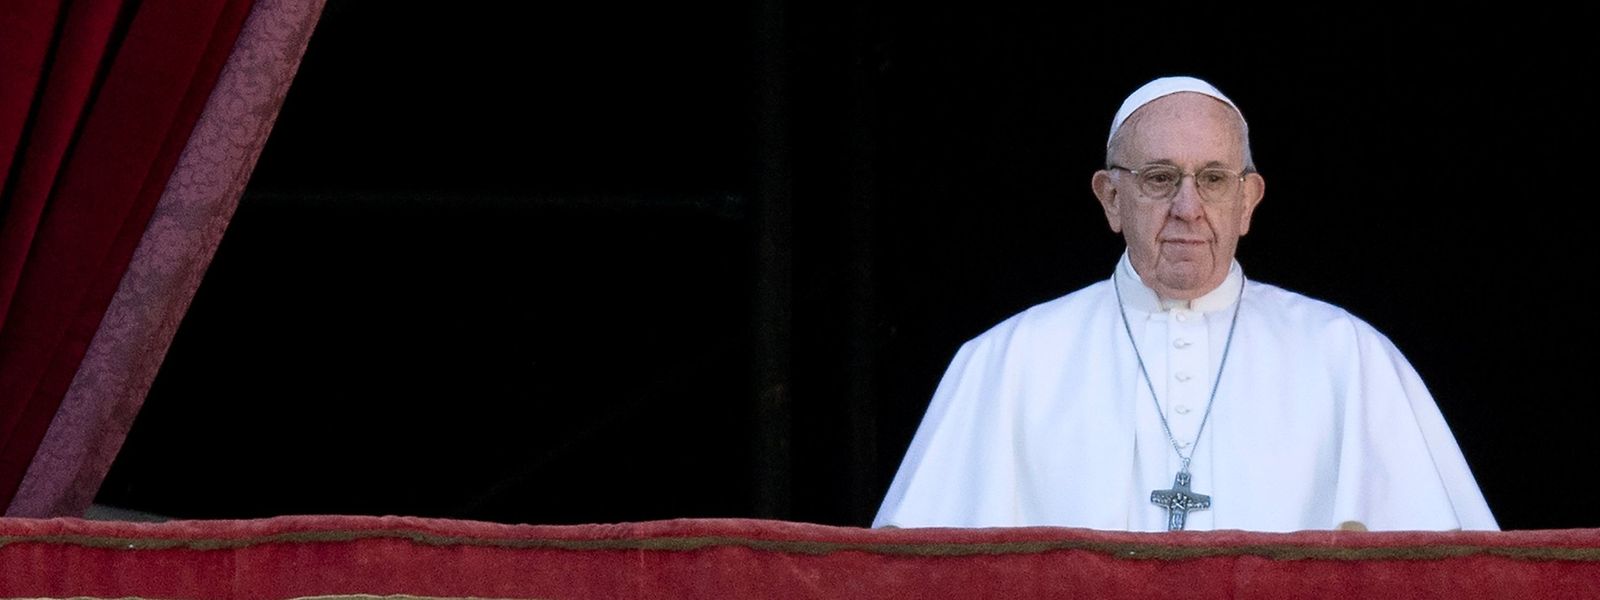 Papst Franziskus spendete am Dienstag den traditionellen „Urbi et Orbi“-Segen.